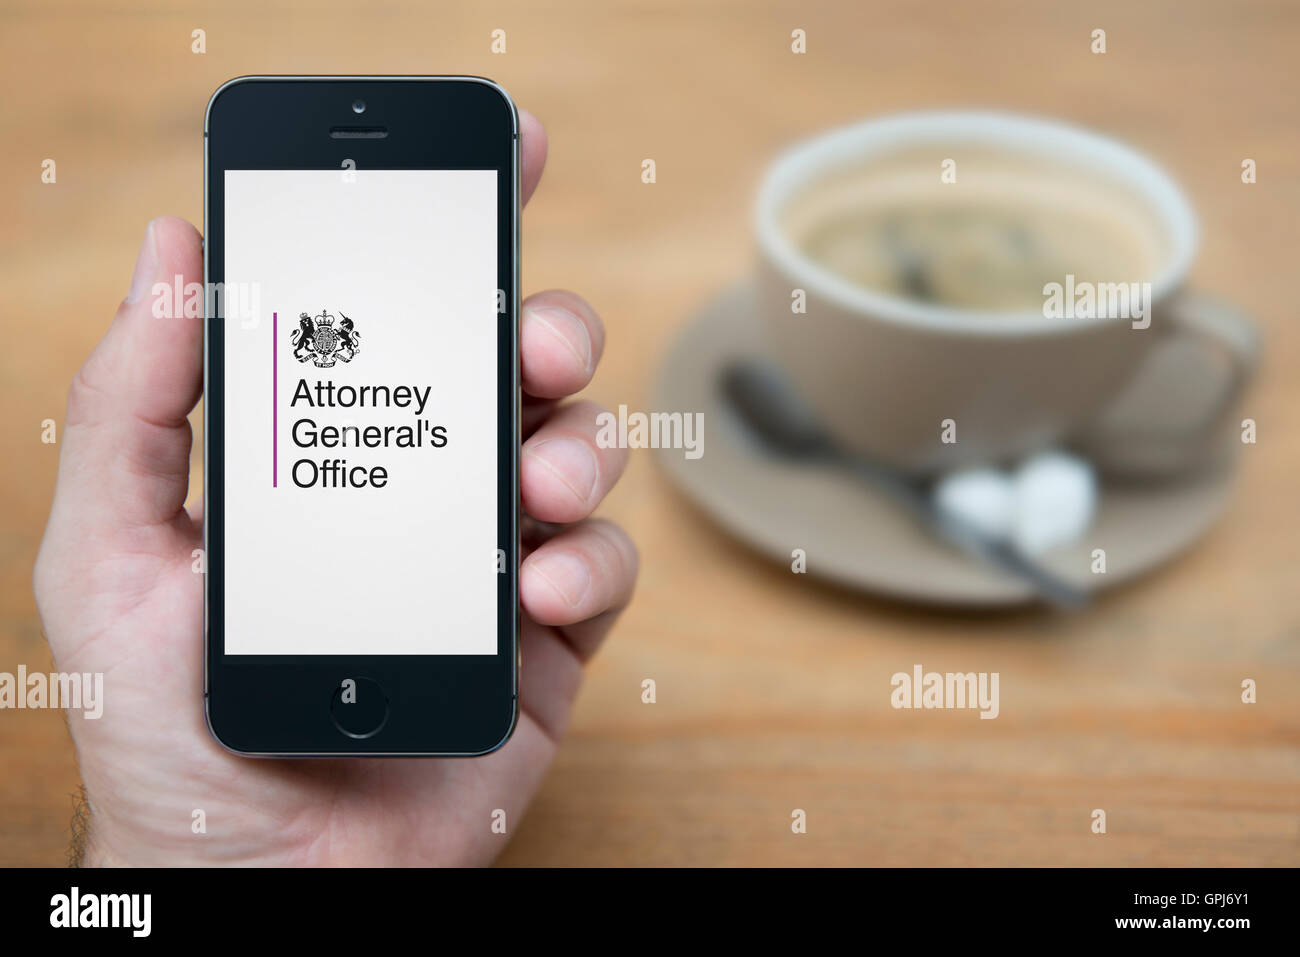 Un uomo guarda al suo iPhone che visualizza il governo del Regno Unito la Procura Generale logo, con caffè (solo uso editoriale). Foto Stock